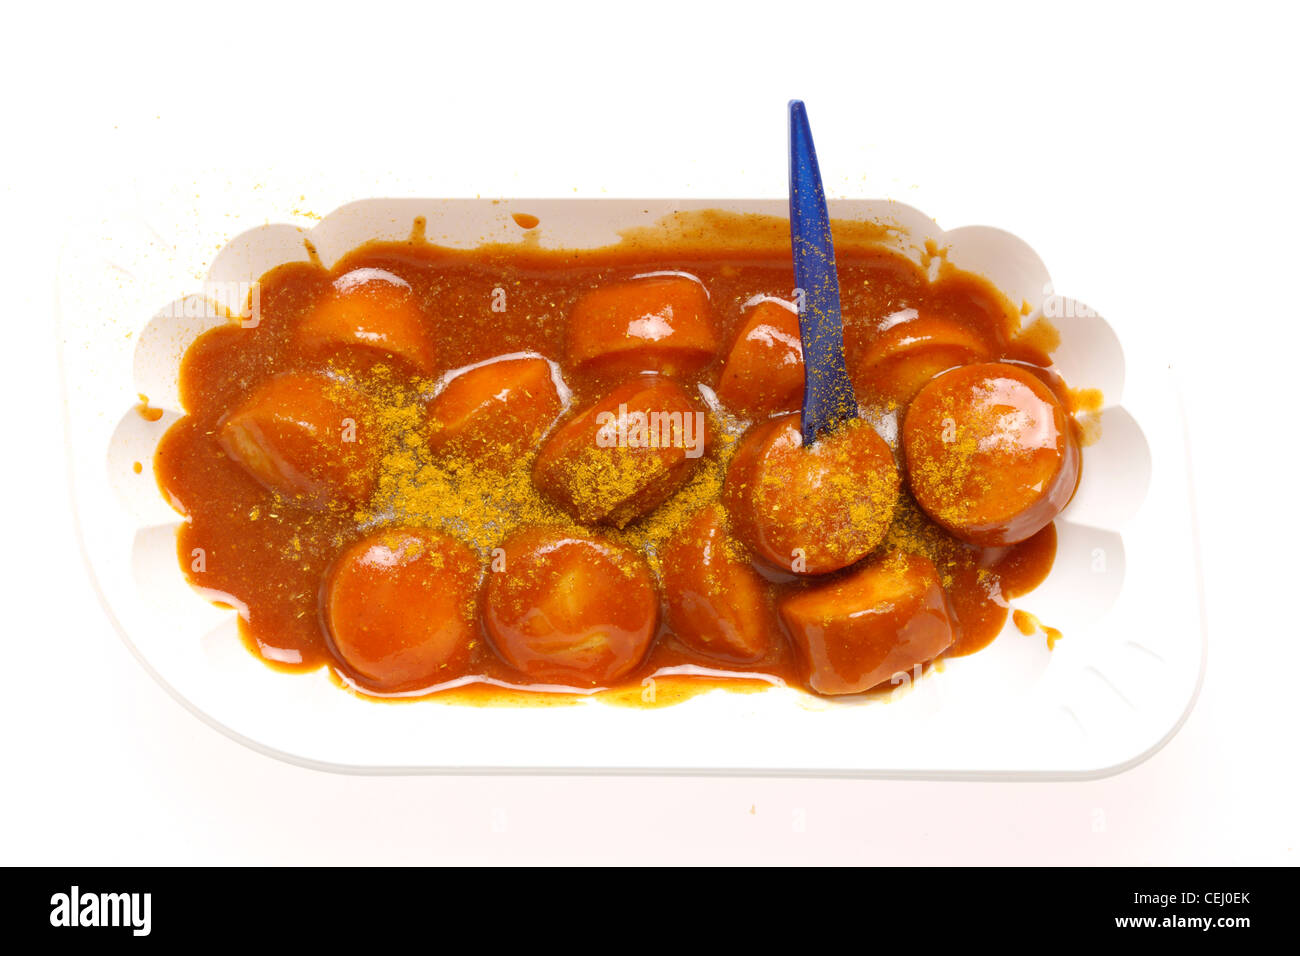 Ernährung, Fast-Food. Curry-Wurst, eine Bratwurst-Stil-Wurst mit pikantem Curry und Tomatensauce. Stockfoto